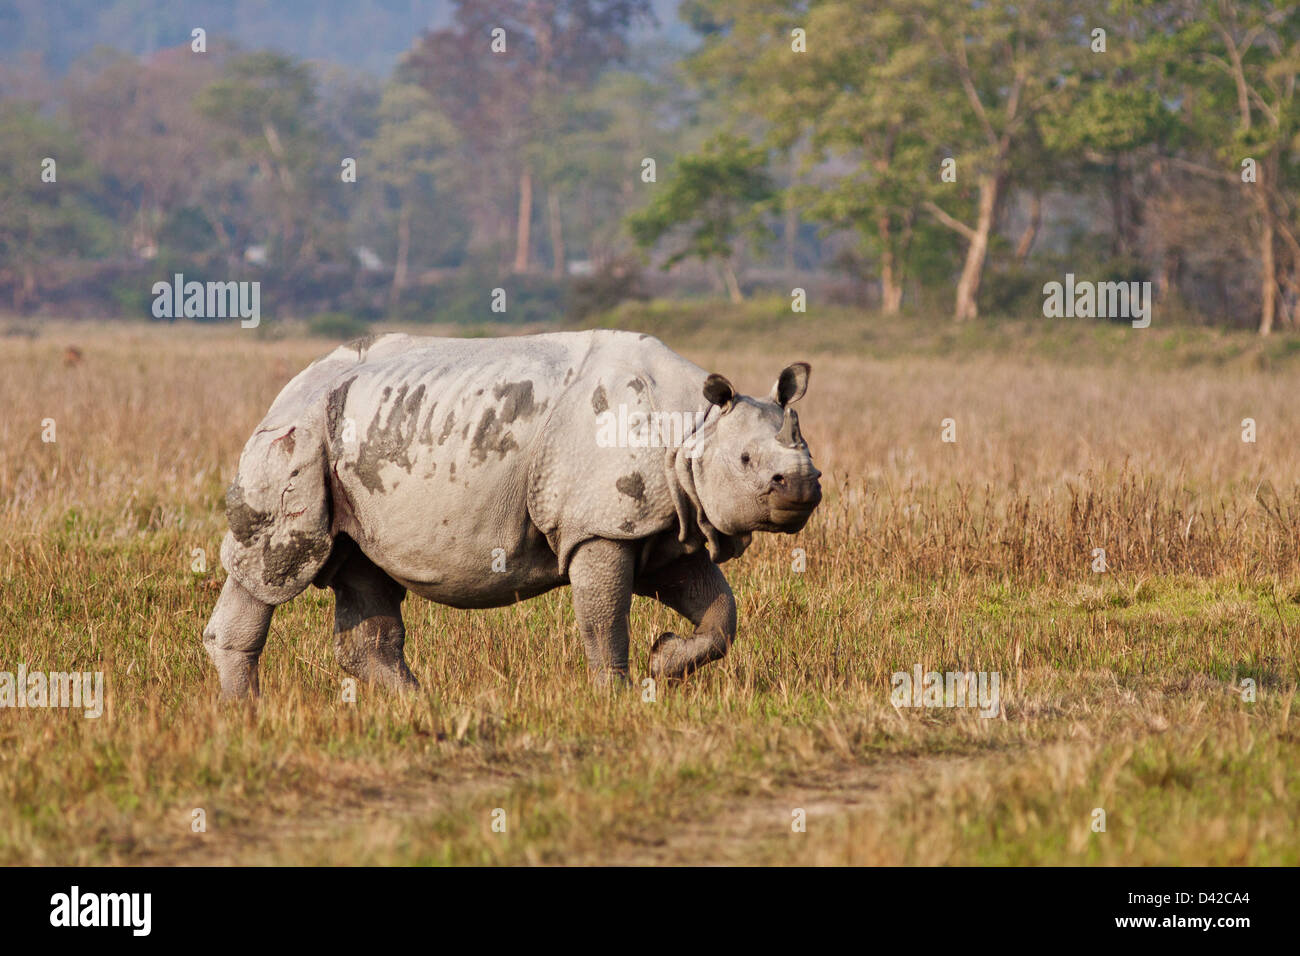 Un rhinocéros unicornes en déplacement, le parc national de Kaziranga, Inde. Banque D'Images